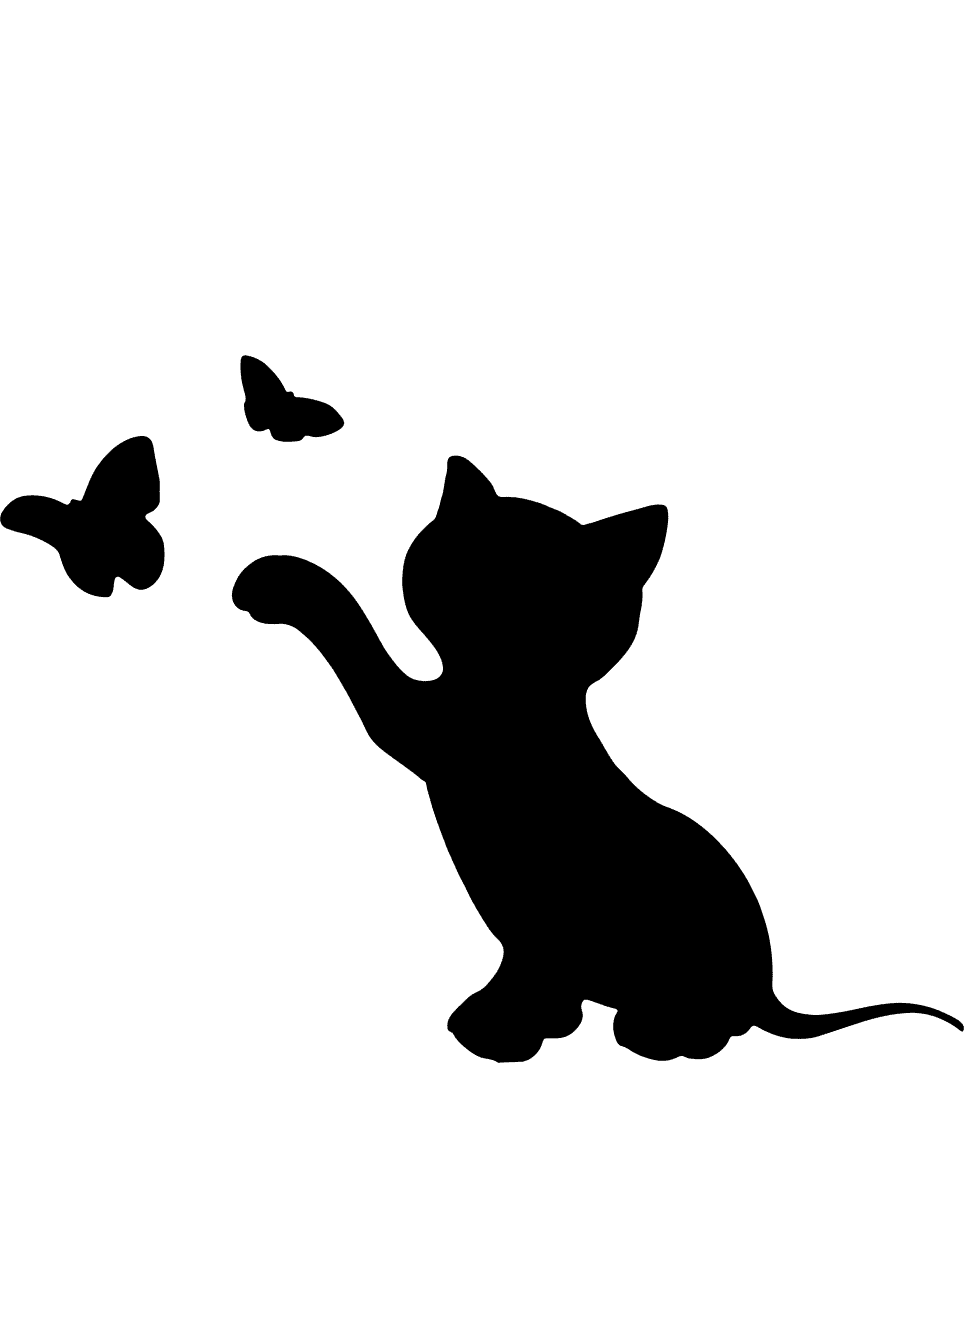 Шаблоны и трафарет кошек для вырезания из бумаги: скачать и распечатать